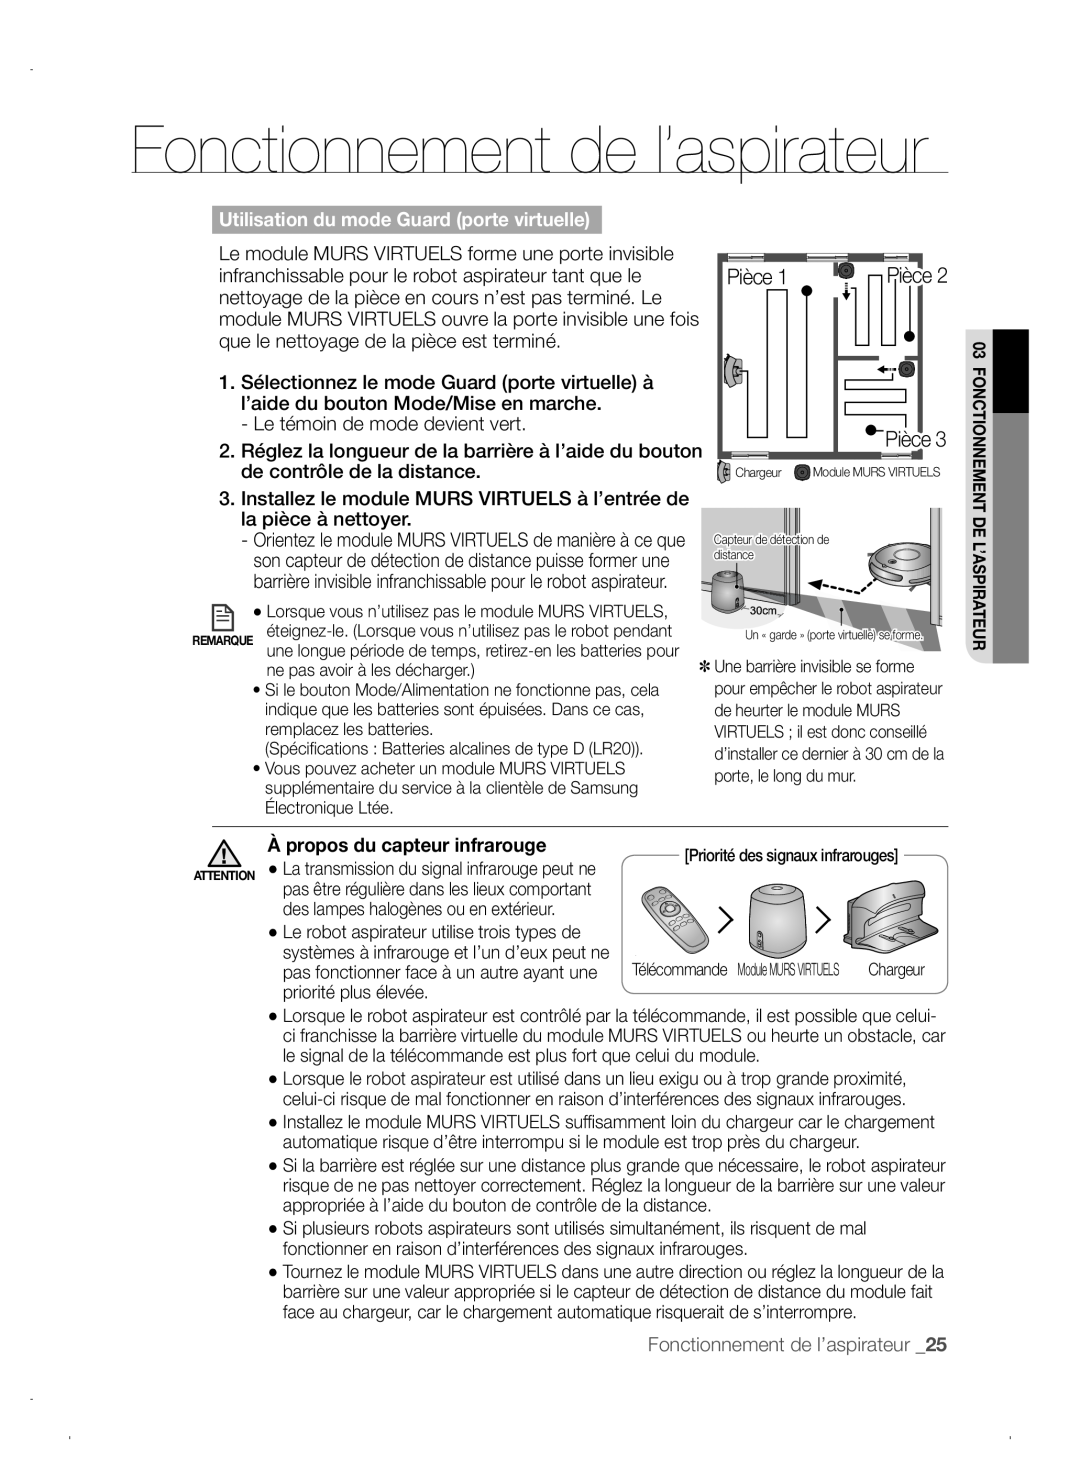 Samsung VCR8845T3A/XET Fonctionnement de l’aspirateur, Pièce 1 Pièce Pièce, Utilisation du mode Guard porte virtuelle 